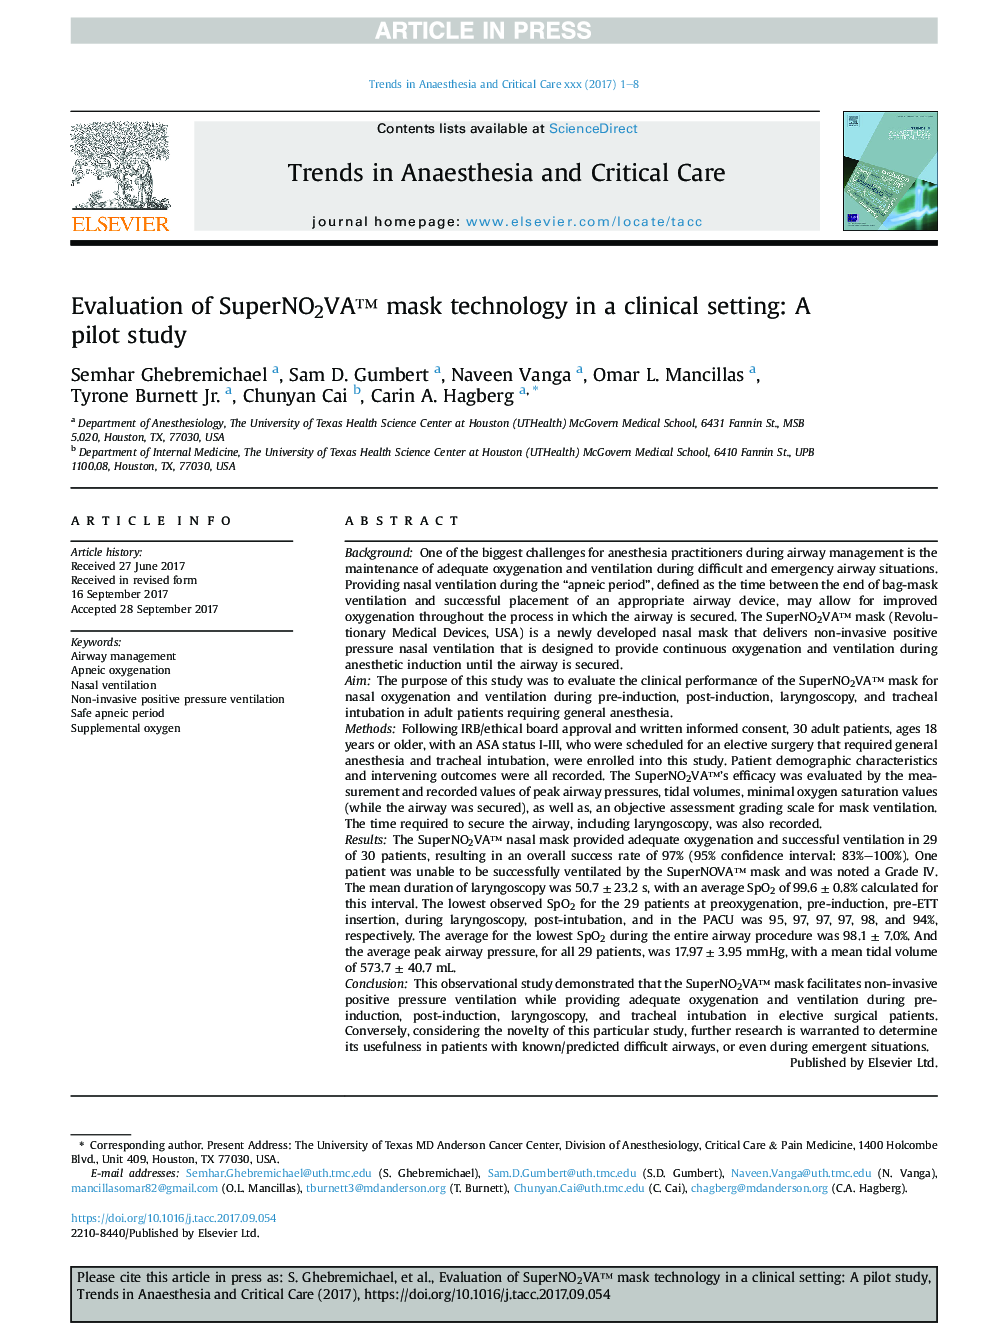 Evaluation of SuperNO2VAâ¢ mask technology in a clinical setting: A pilot study